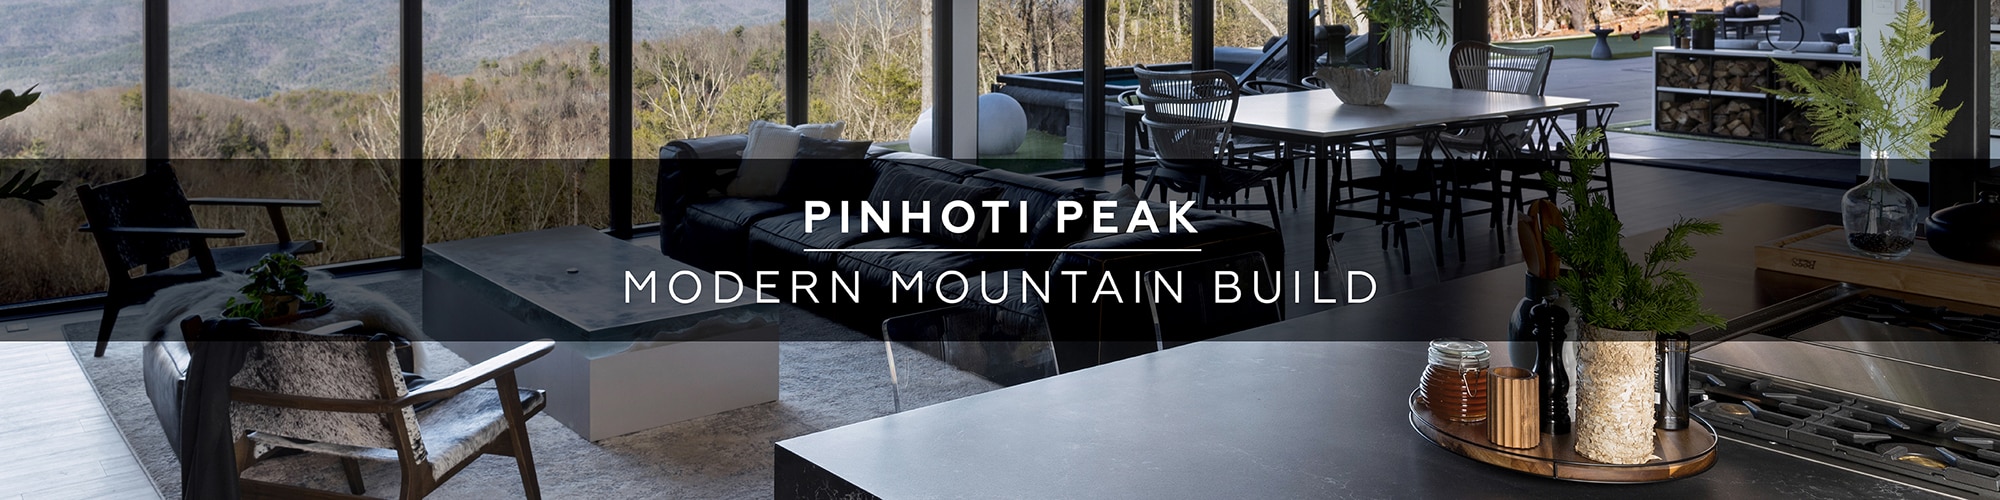 Pinhoti Peak Modern Mountain Build